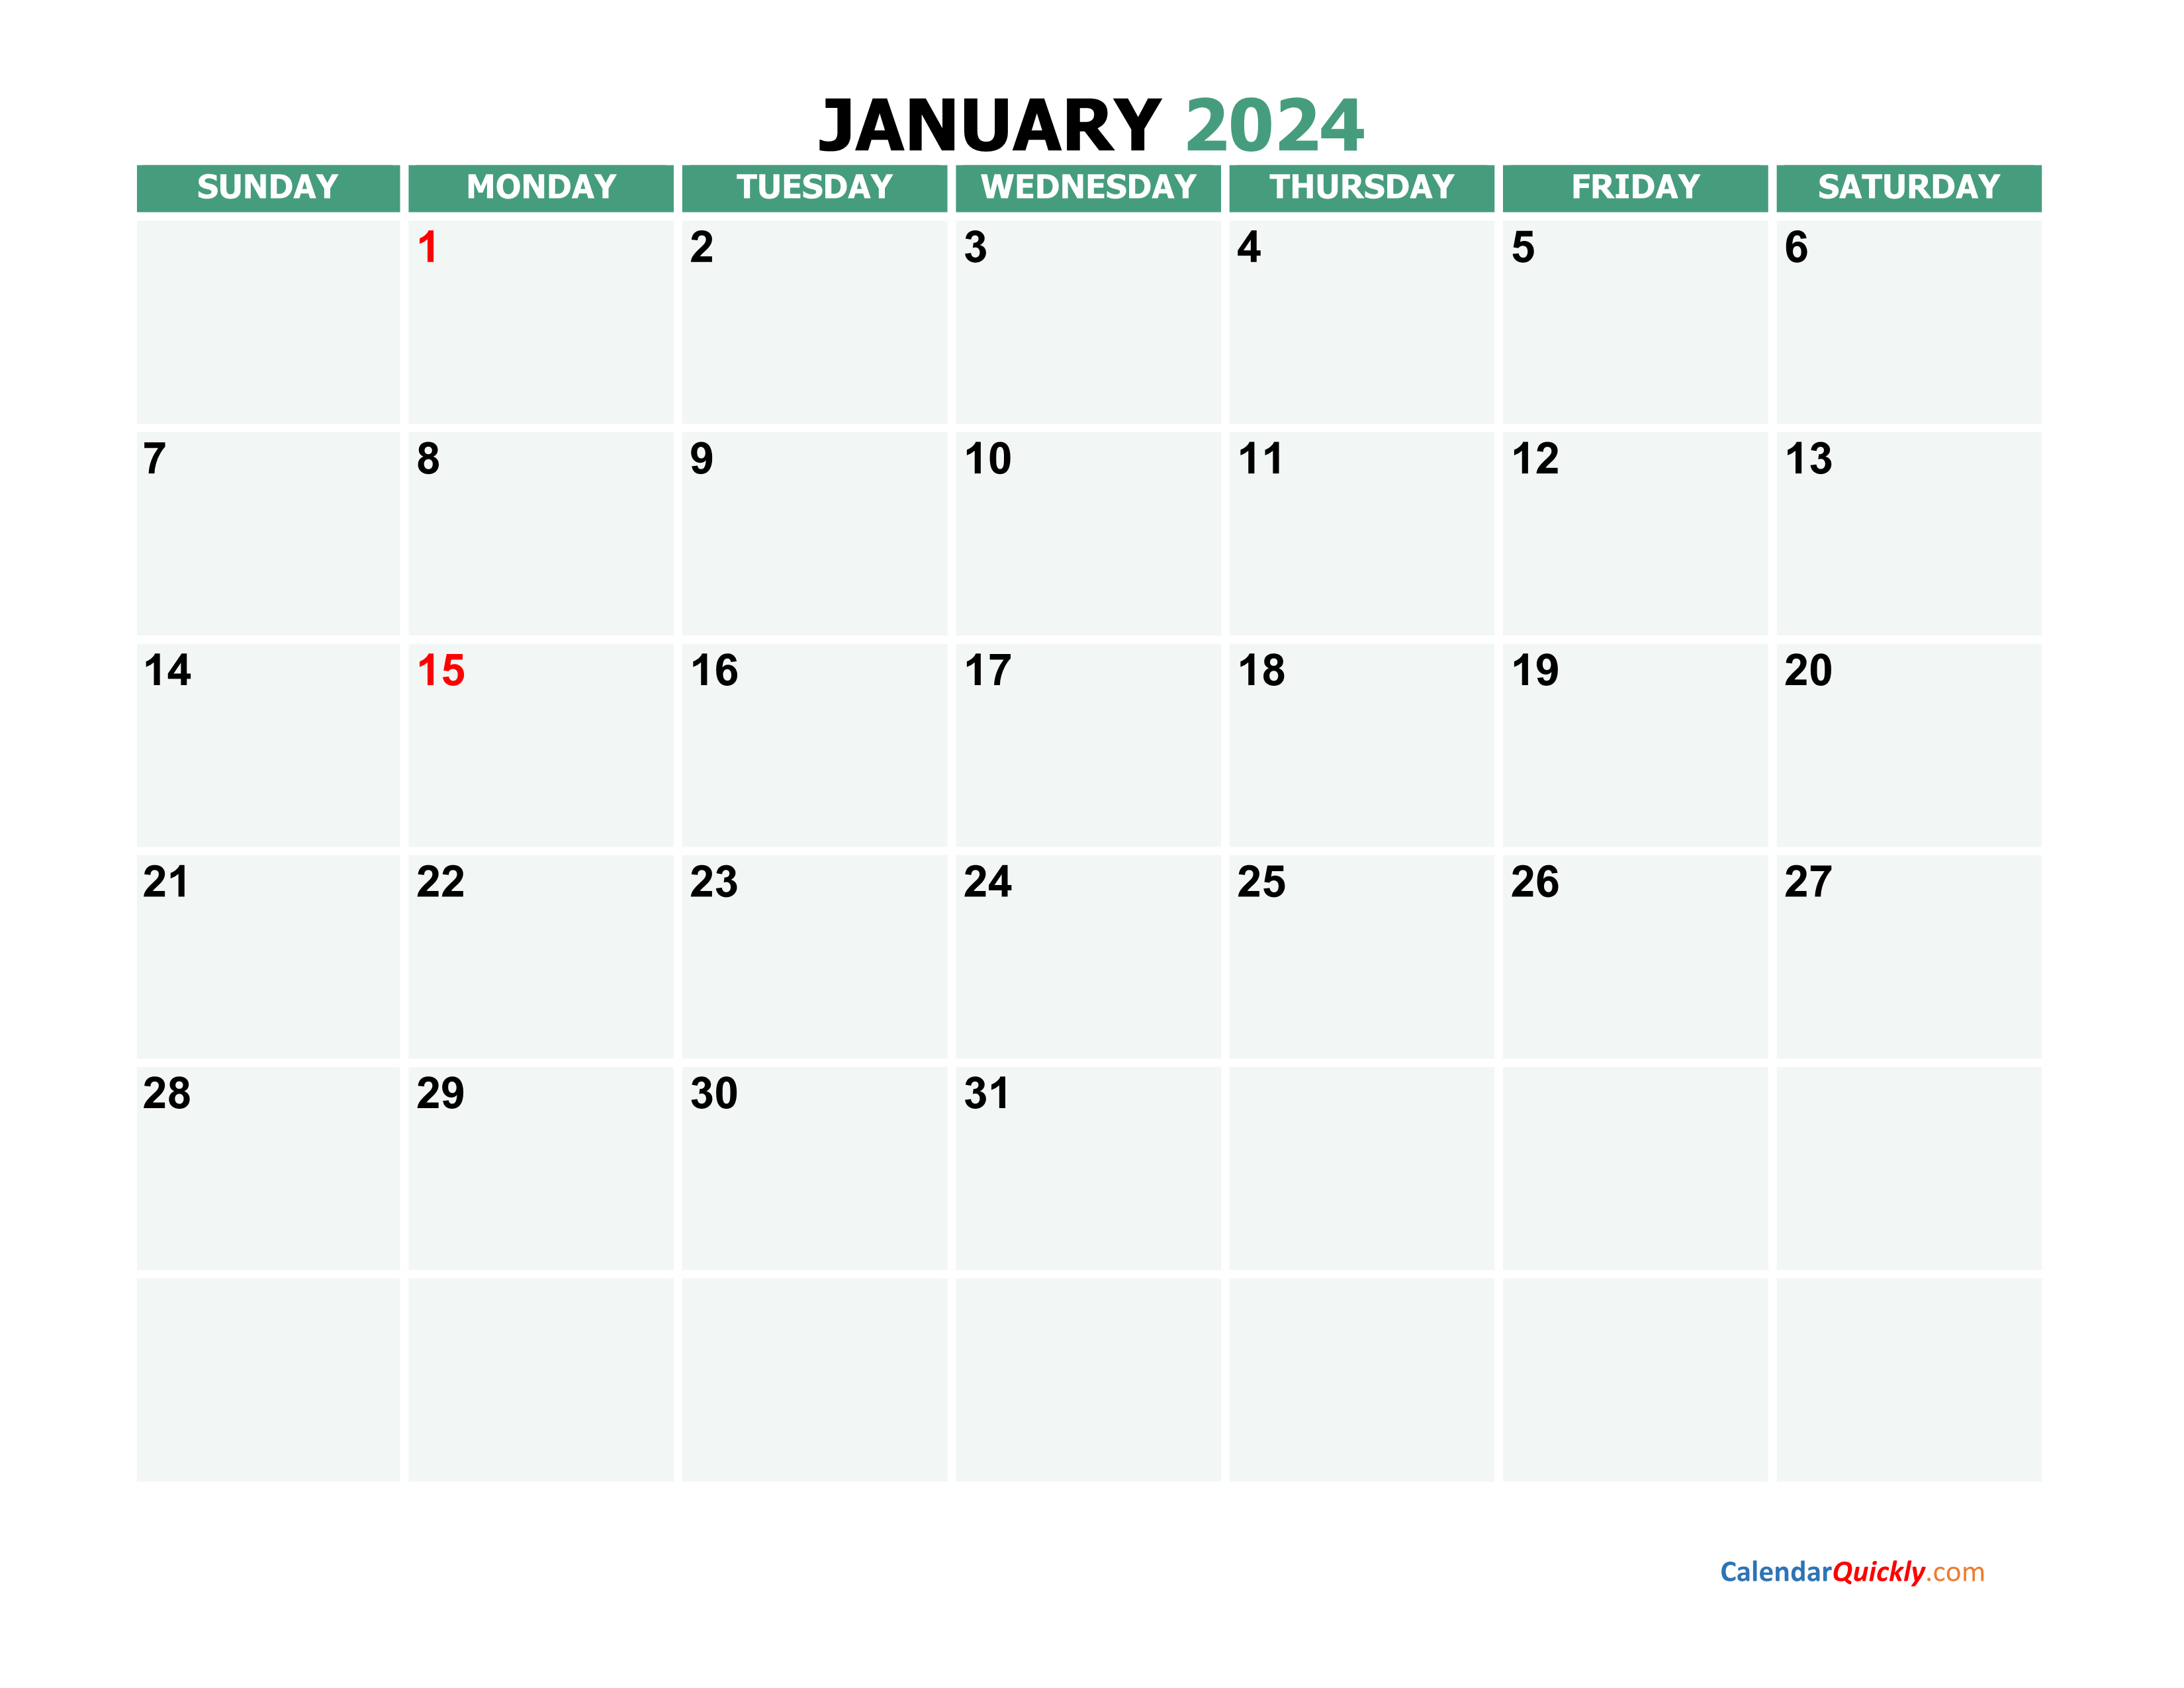 Lunar Calendar Google Calendar 2024 New Top The Best List of February